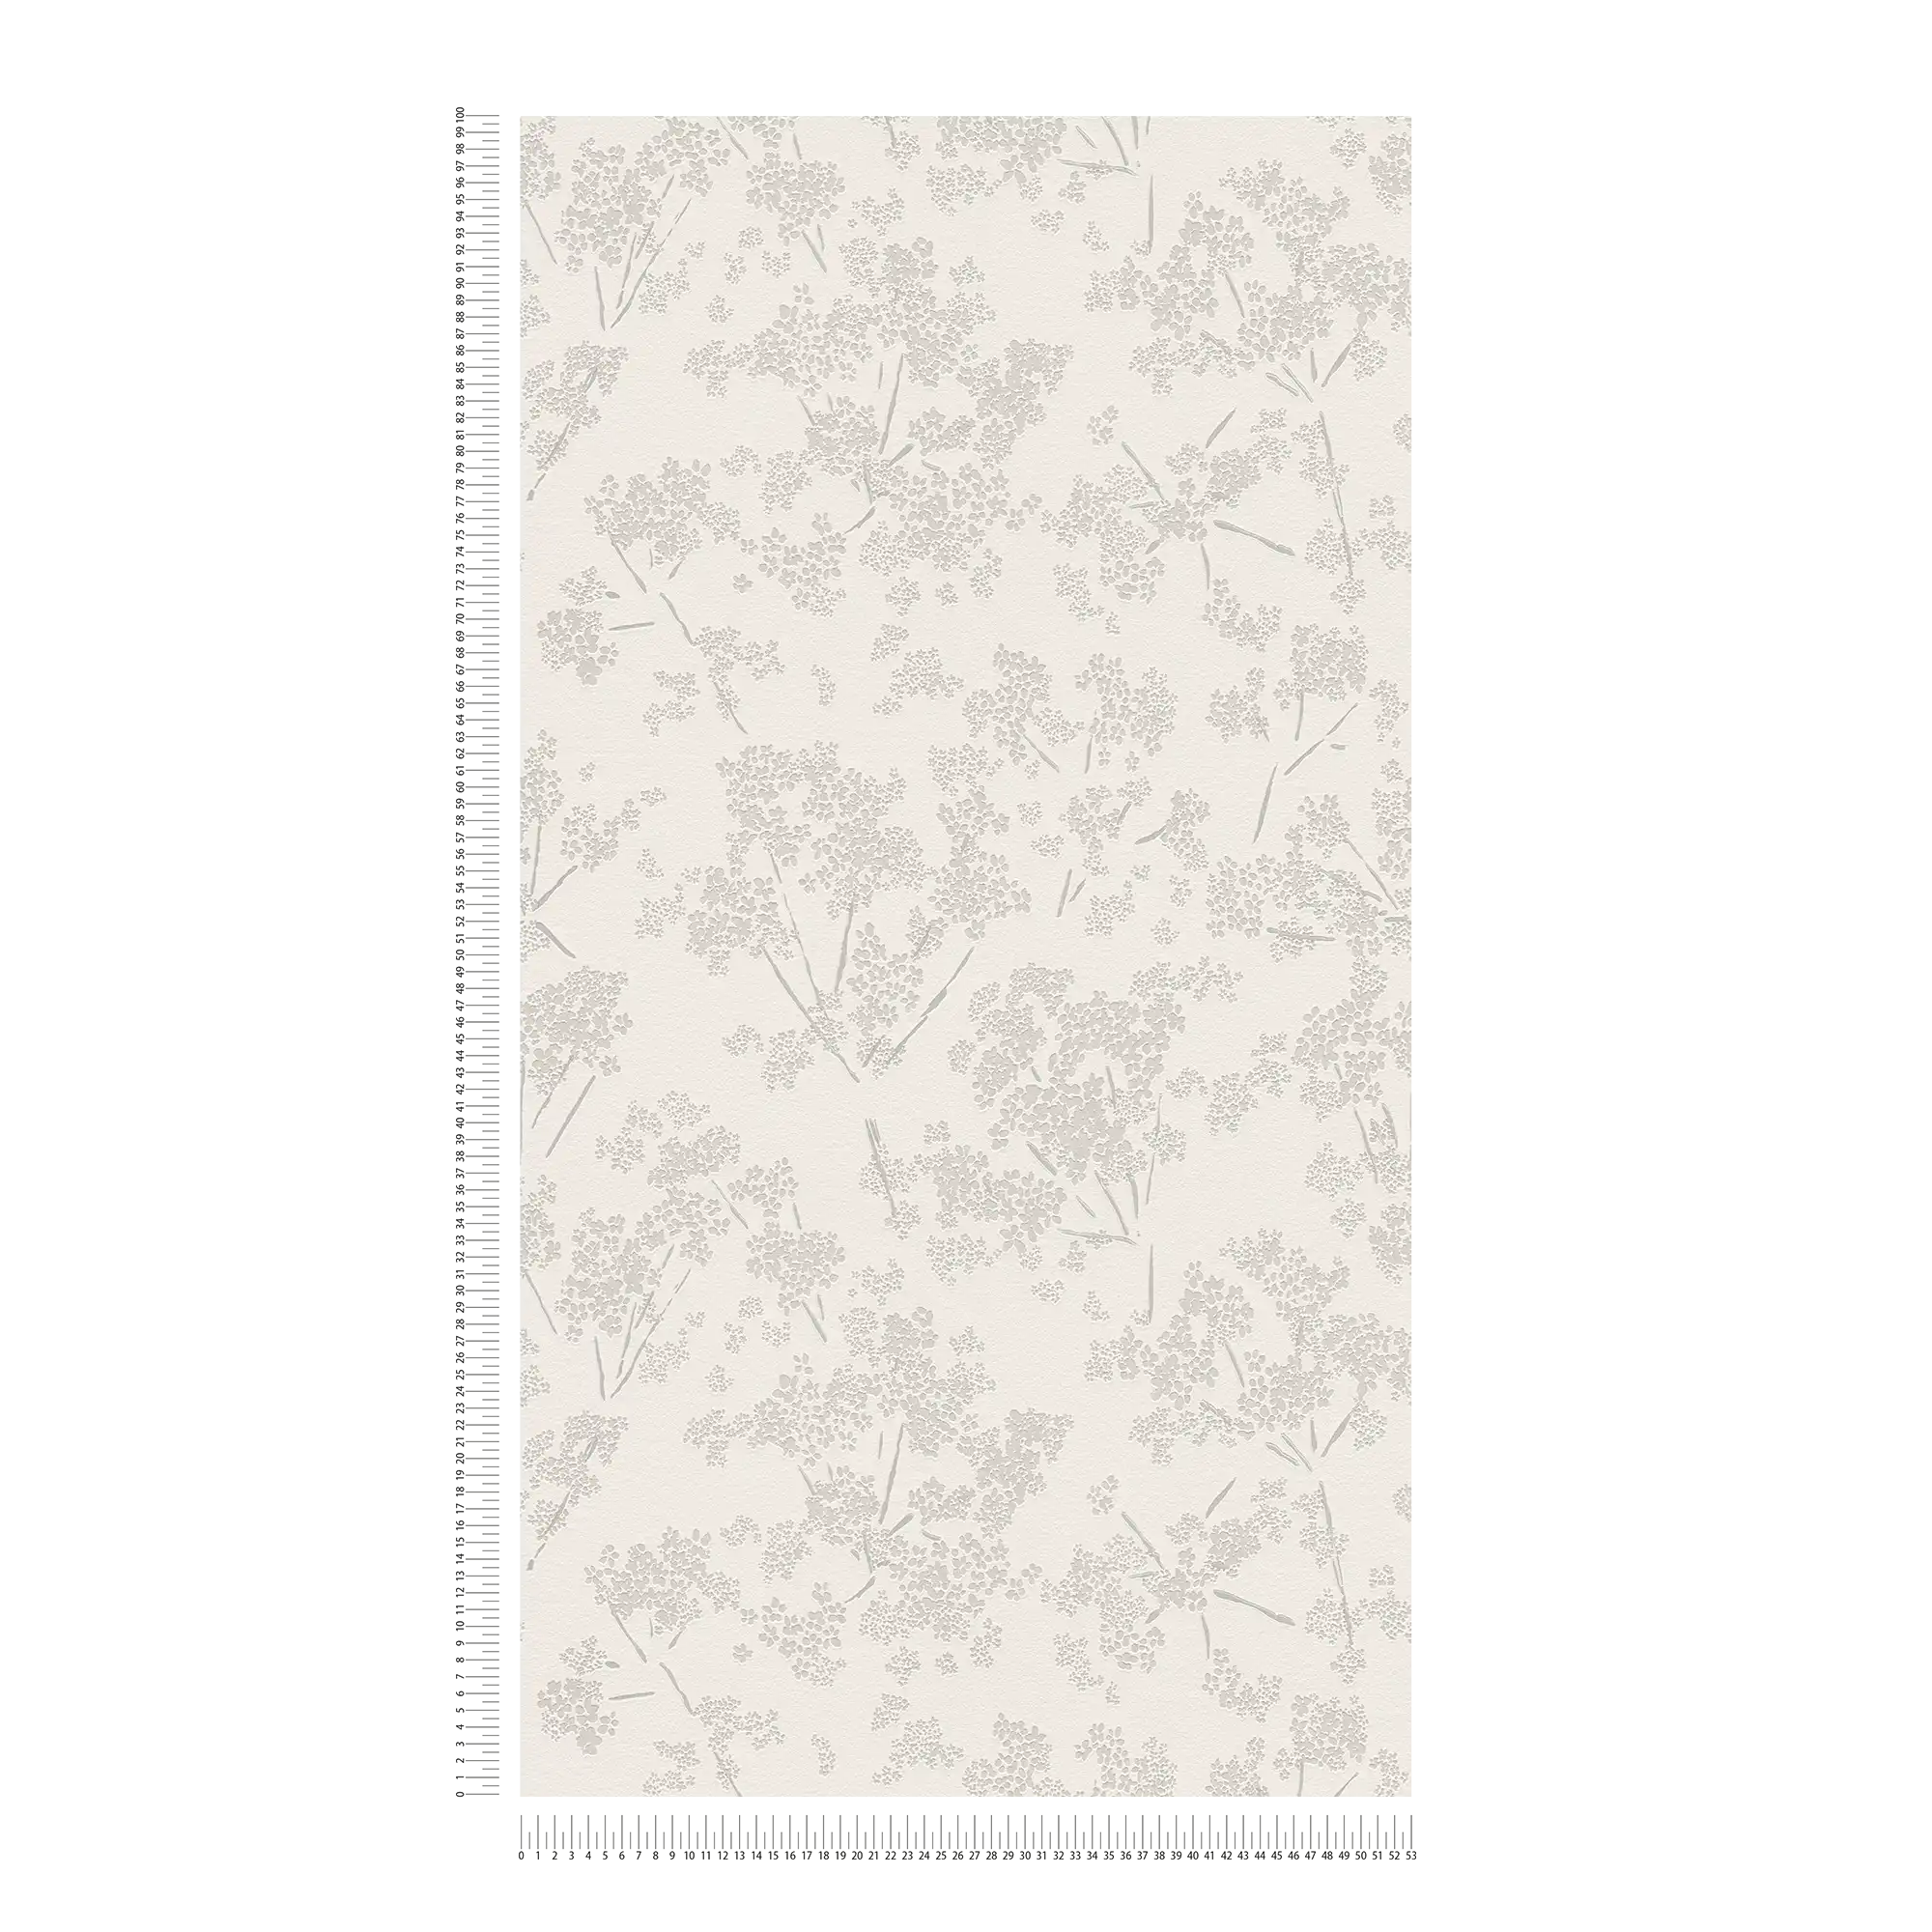             Vliesbehang met bloemenmotief - wit, grijs
        